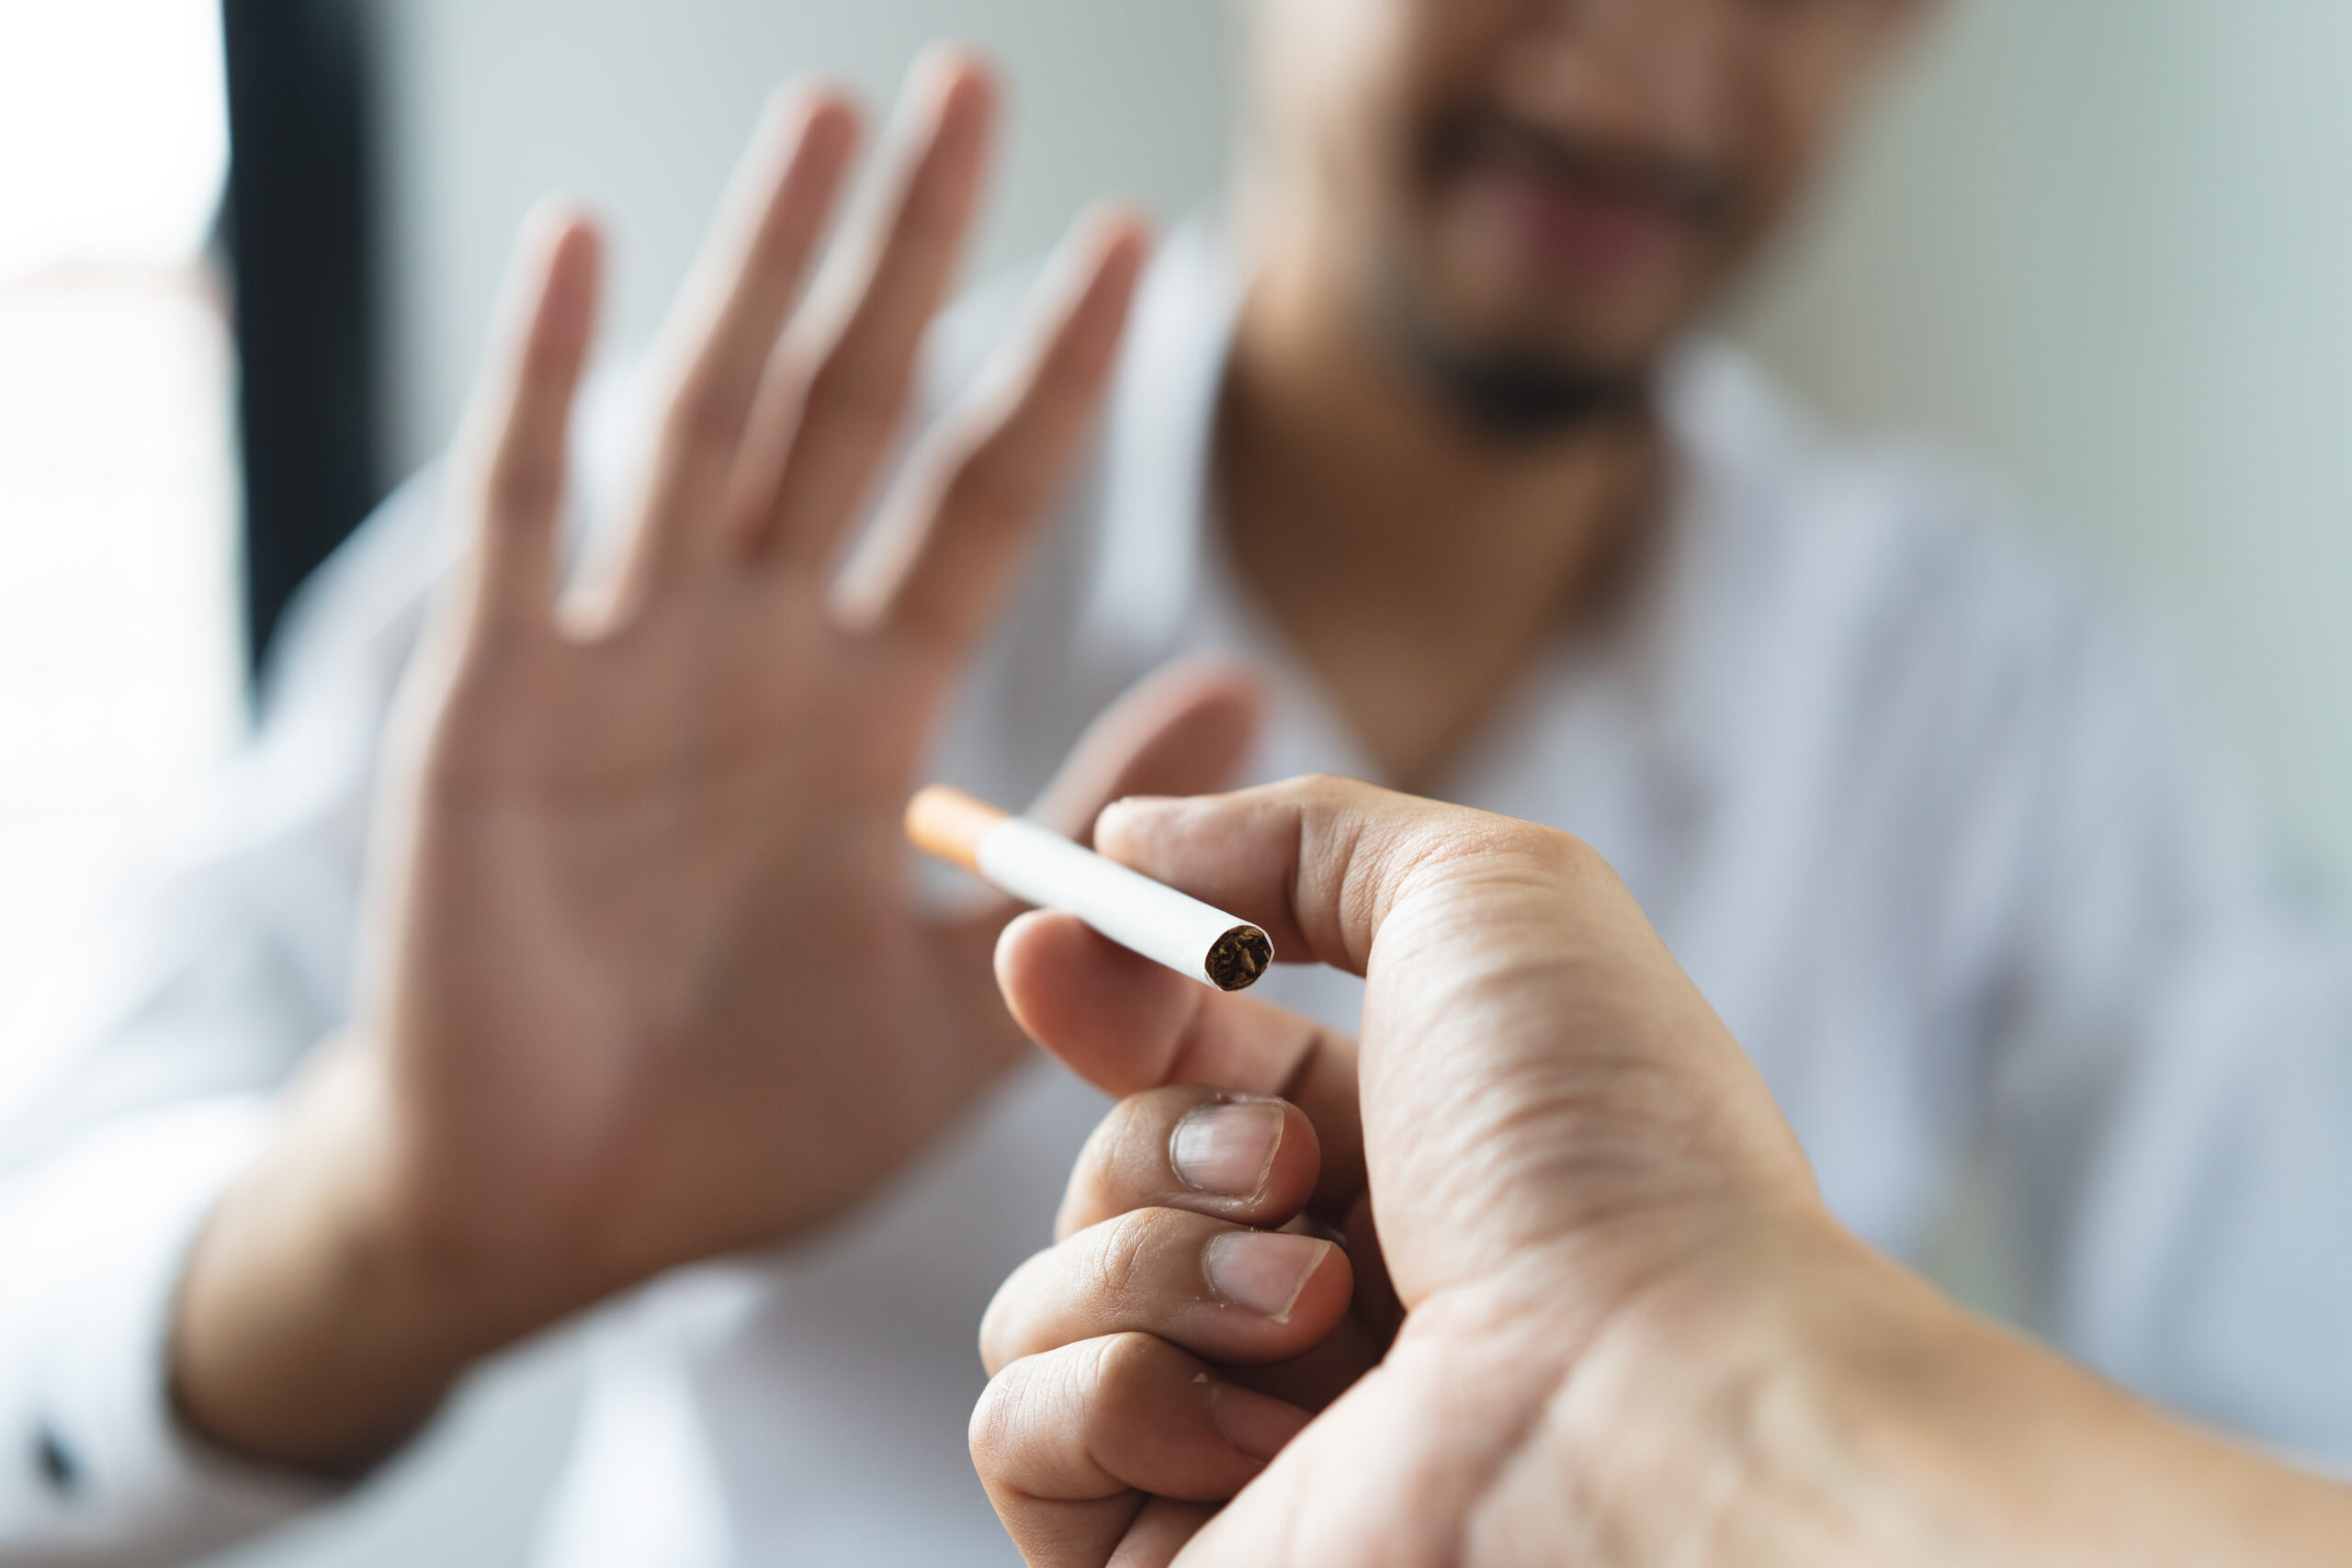 Nikotin: Wege von der Nikotinsucht loszukommen - Rauschmittel